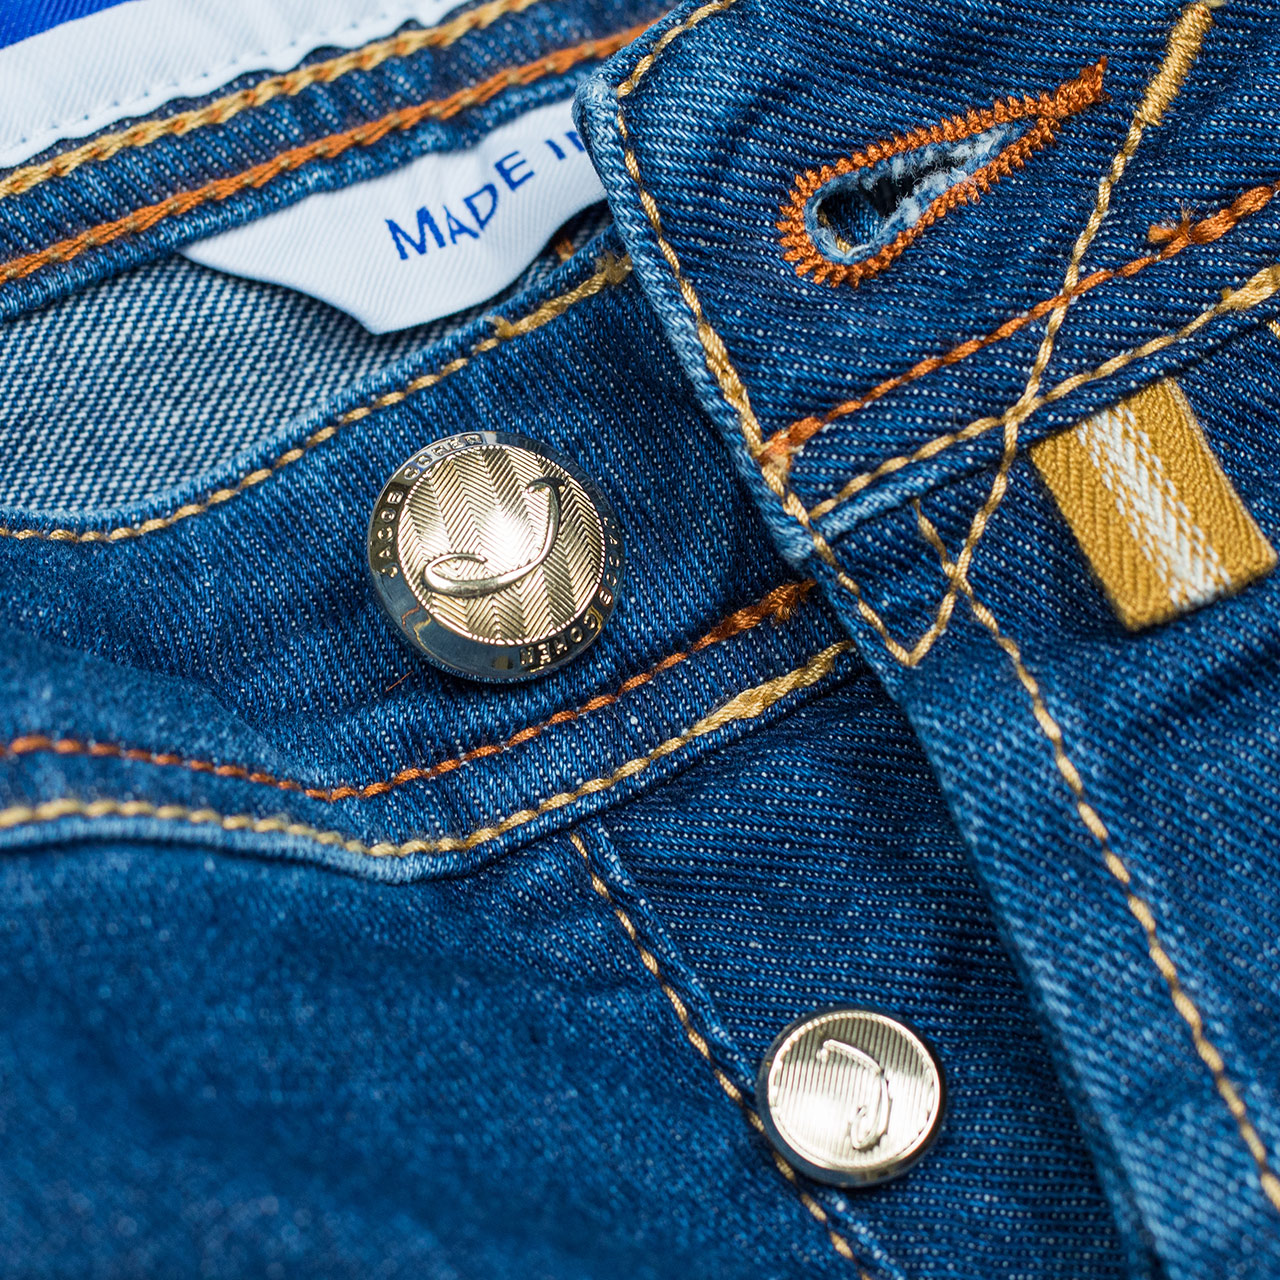 Jacob Cohen Jeans BARD "Premium Edition Denim" in blau leicht verwaschen